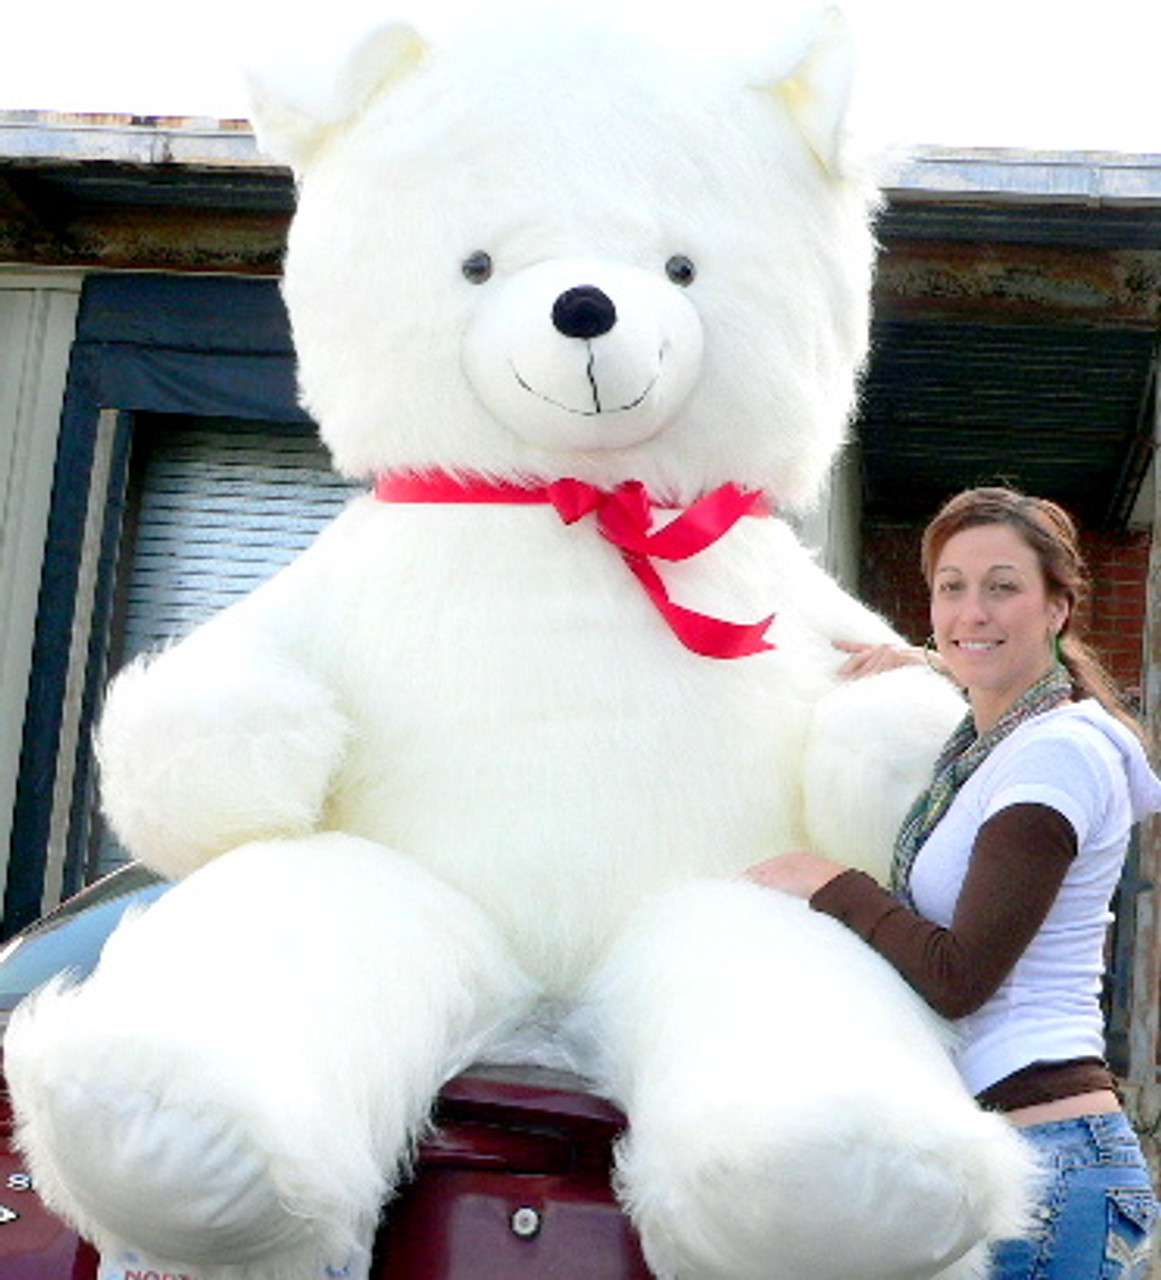 white teddy bear big